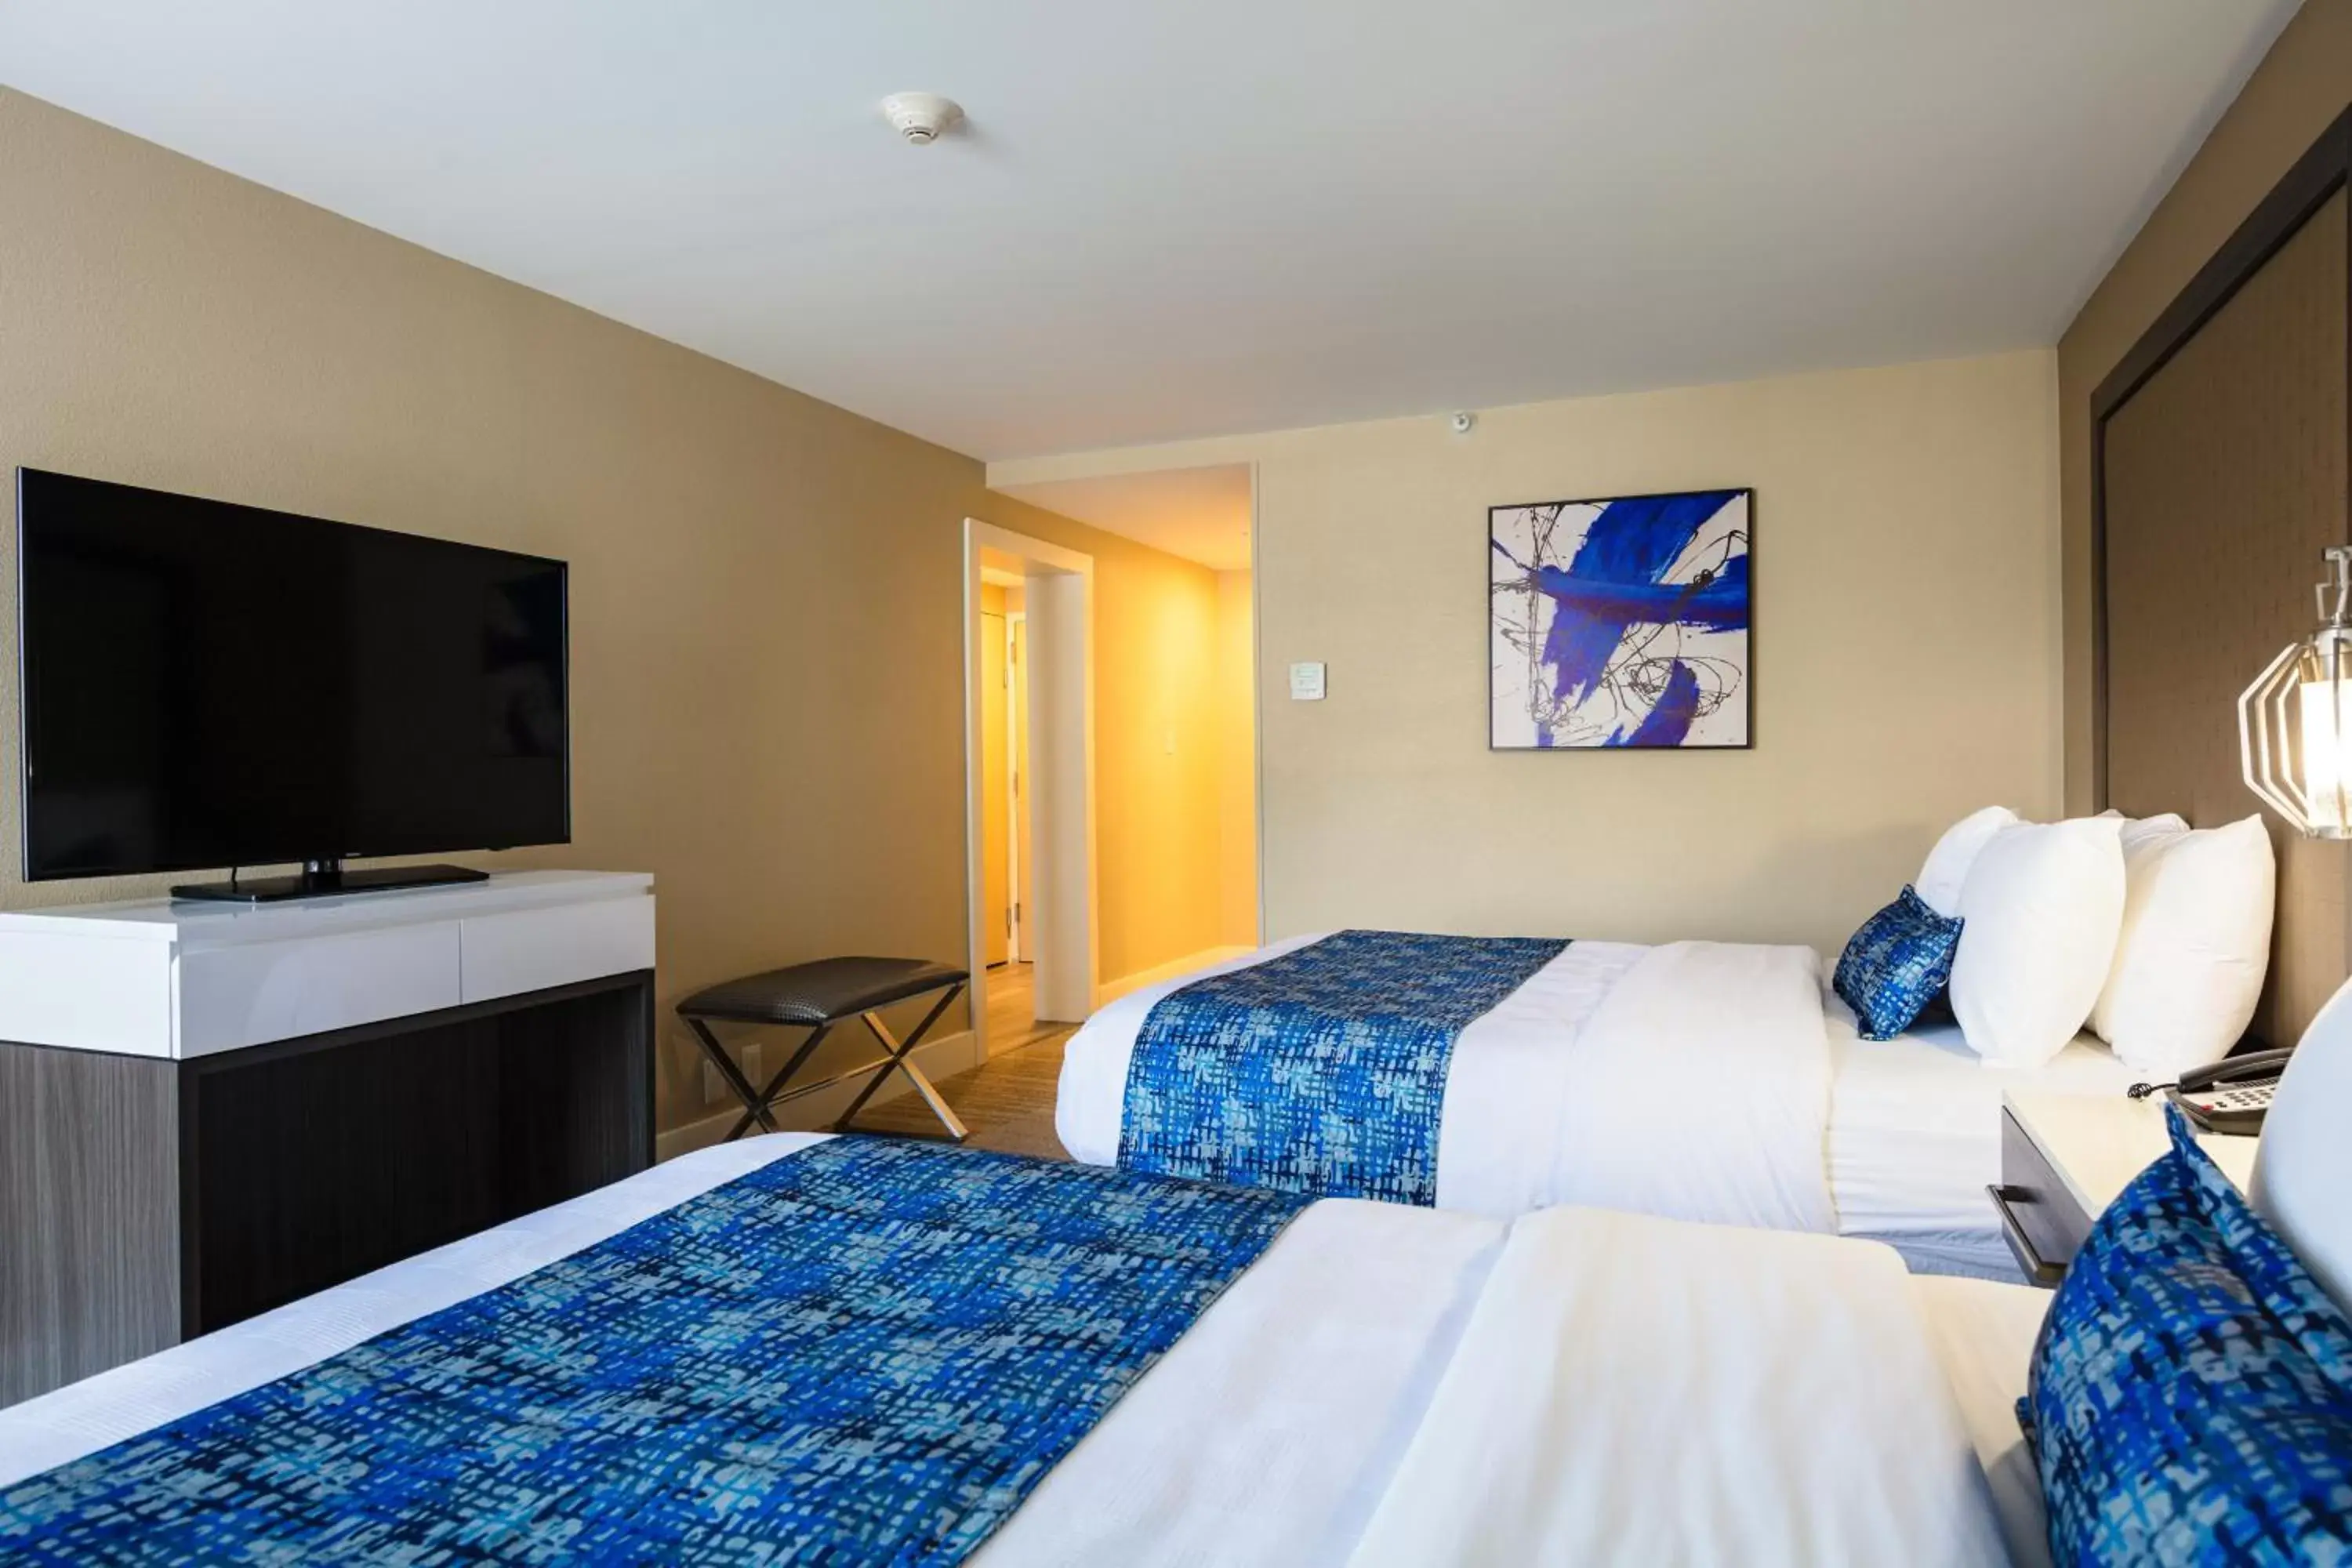 Bedroom, Bed in Best Western Plus Greenville I-385 Inn & Suites